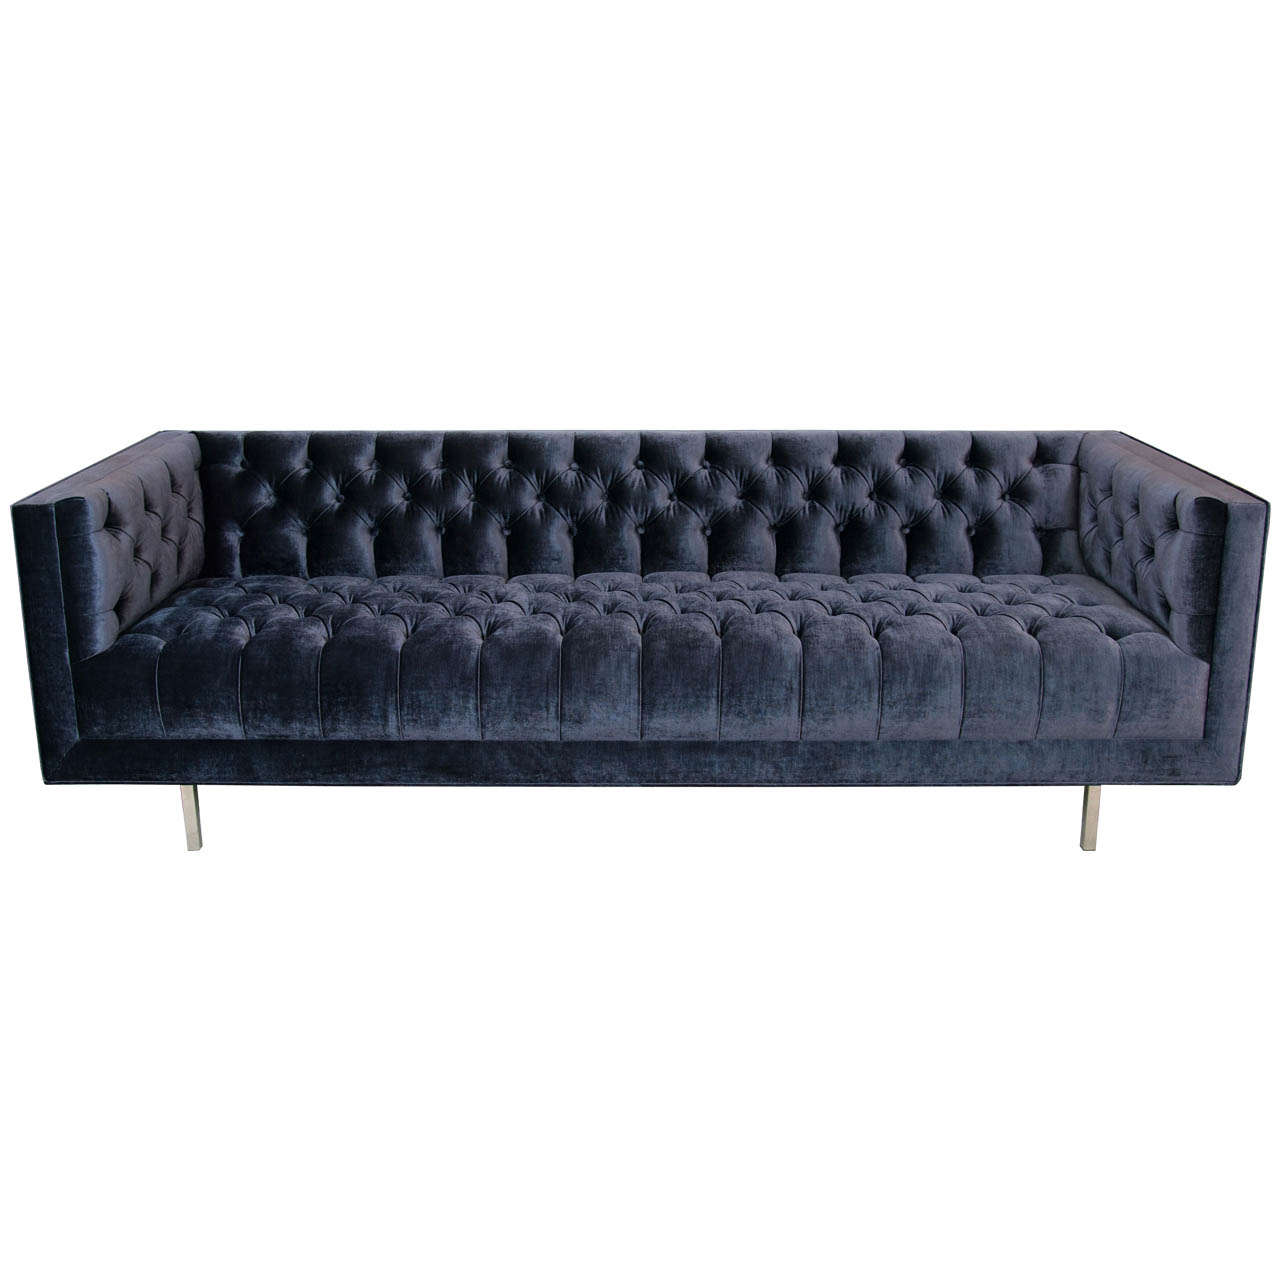 Modern Tufted Velvet Sofa For Sale at 1stdibs